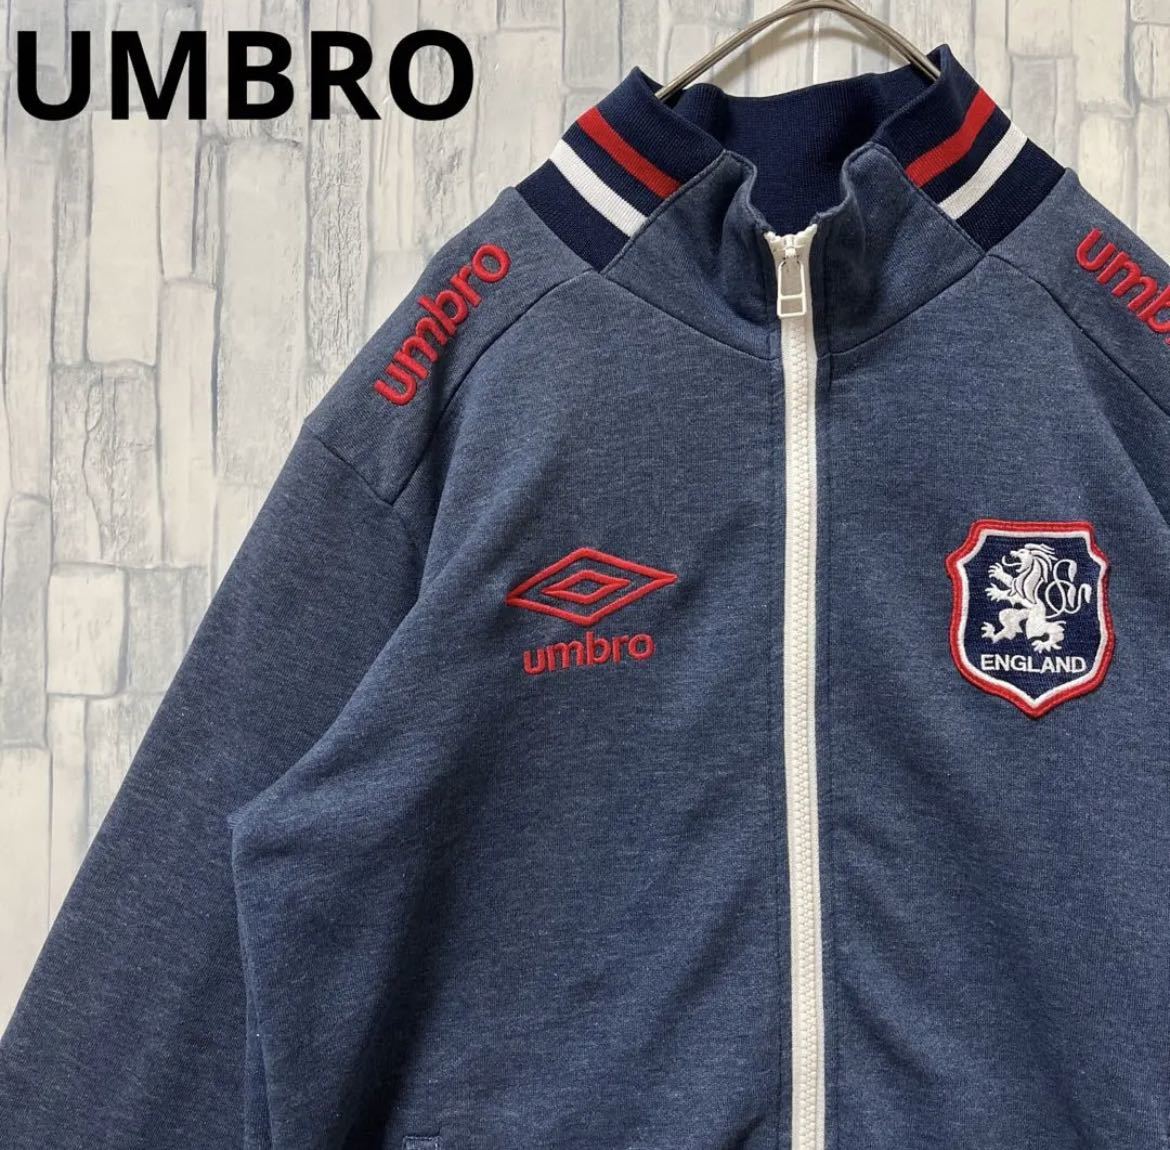 UMBRO アンブロ サッカー イングランド代表 スウェット生地 ジャージ 上 トラックジャケット M シンプルロゴ 刺繍ロゴ ワッペン デサント